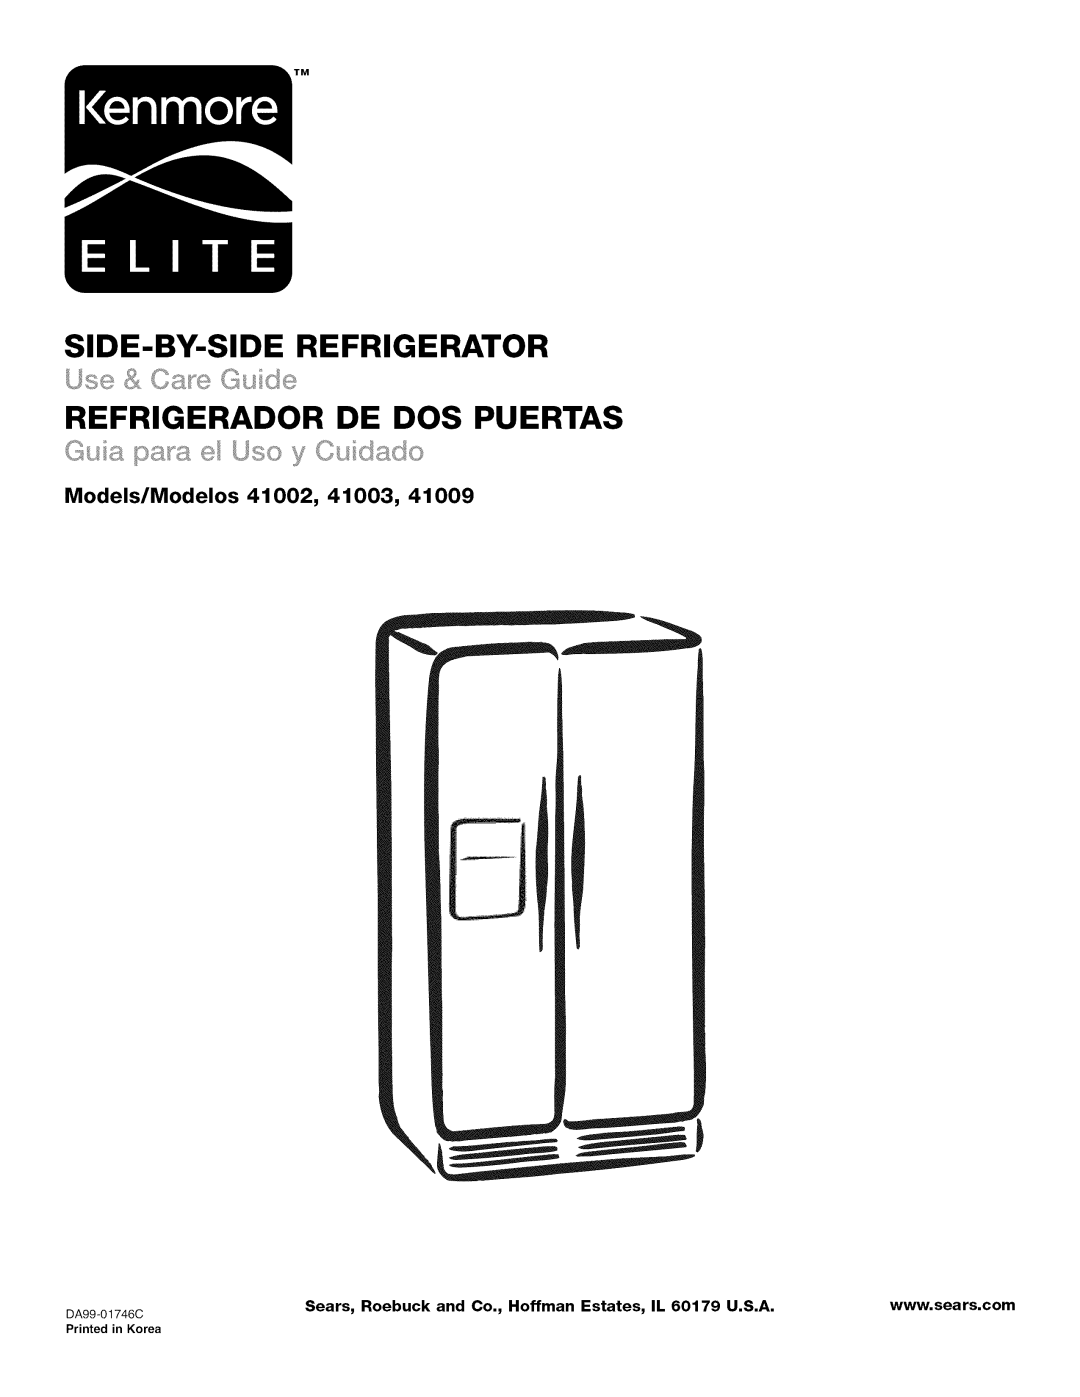 Kenmore 41009 manual Models/Modelos 41002, 41003, Side-By-Siderefrigerator, Refrigerador De Dos Puertas, DA99-01746C 